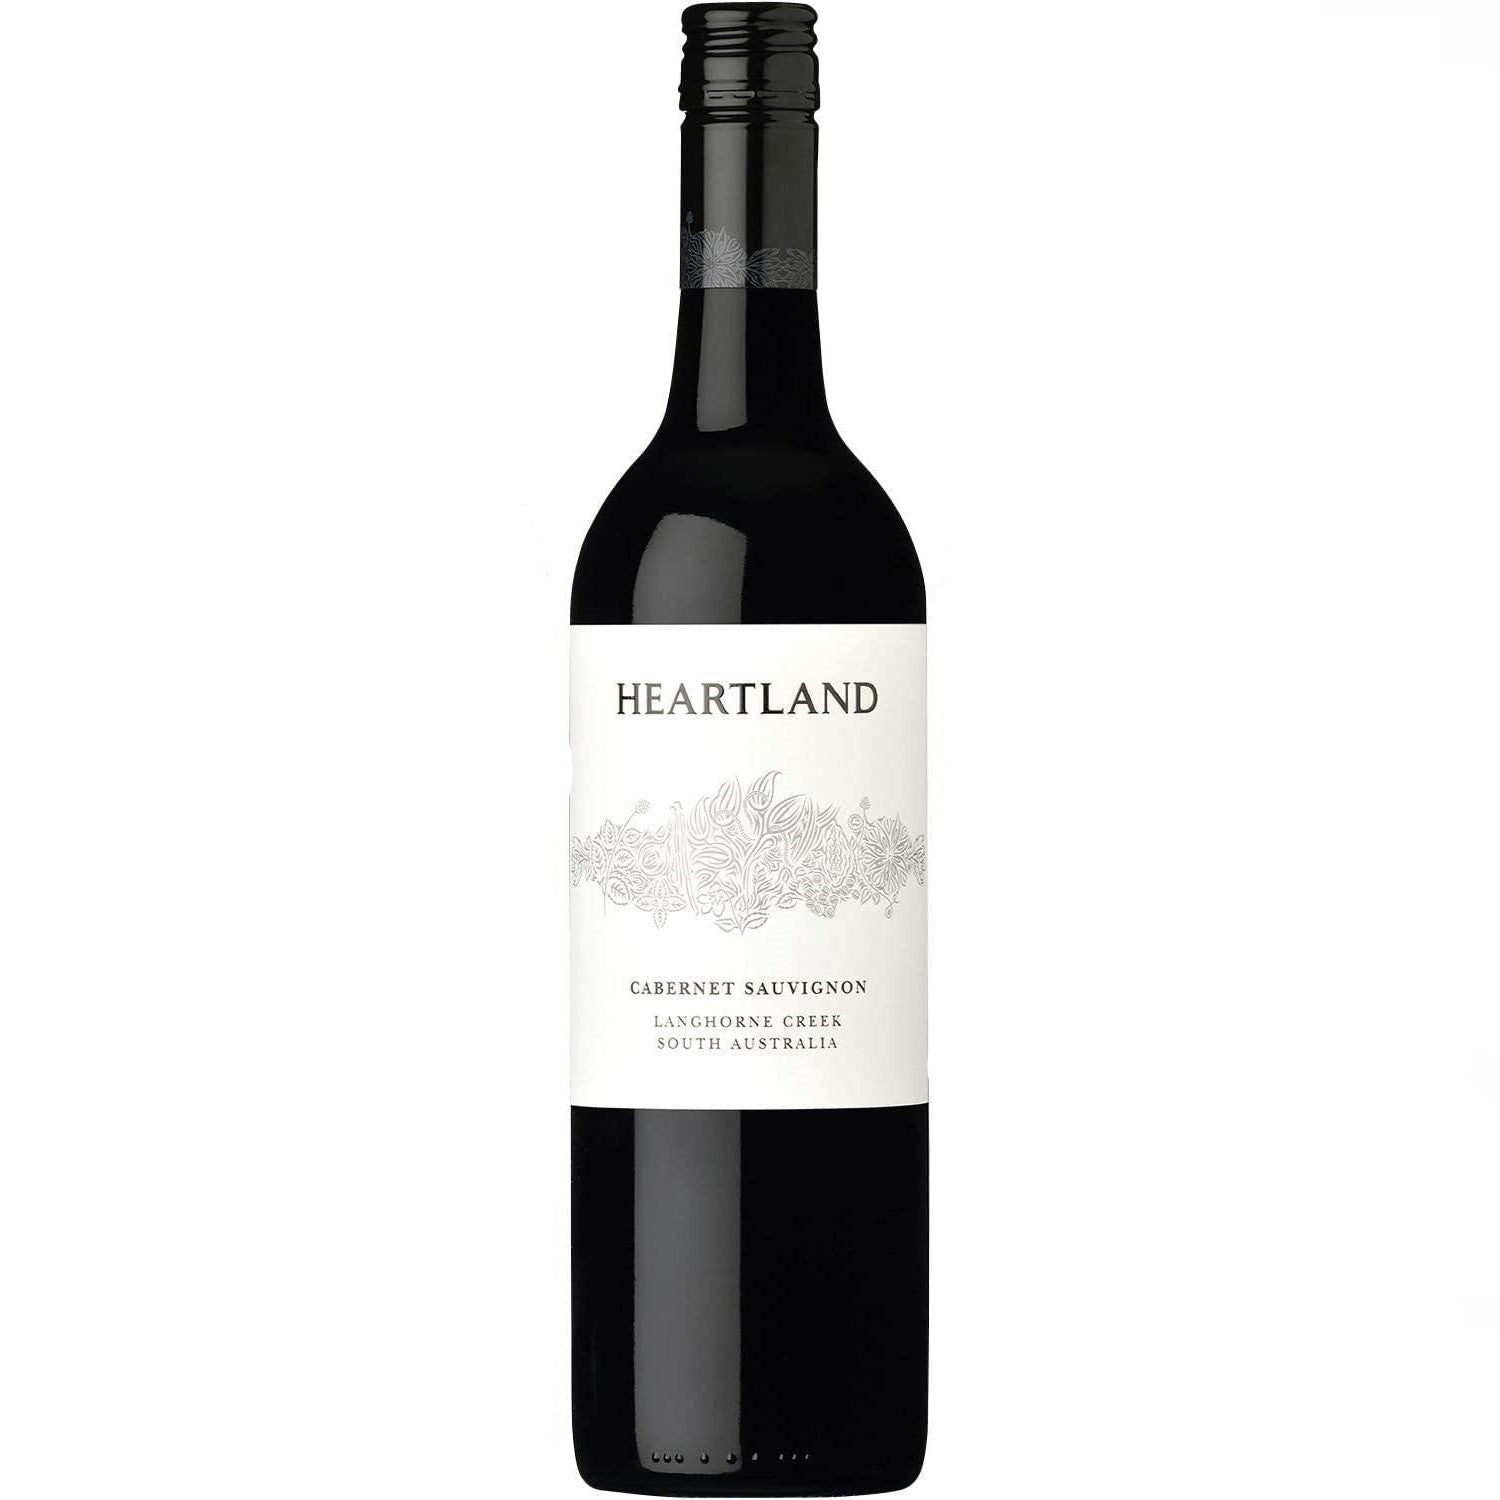 Heartland Cabernet Sauvignon Langhorne Creek Rotwein veganer Wein trocken Australien (3 x 0.75l) - Versanel -